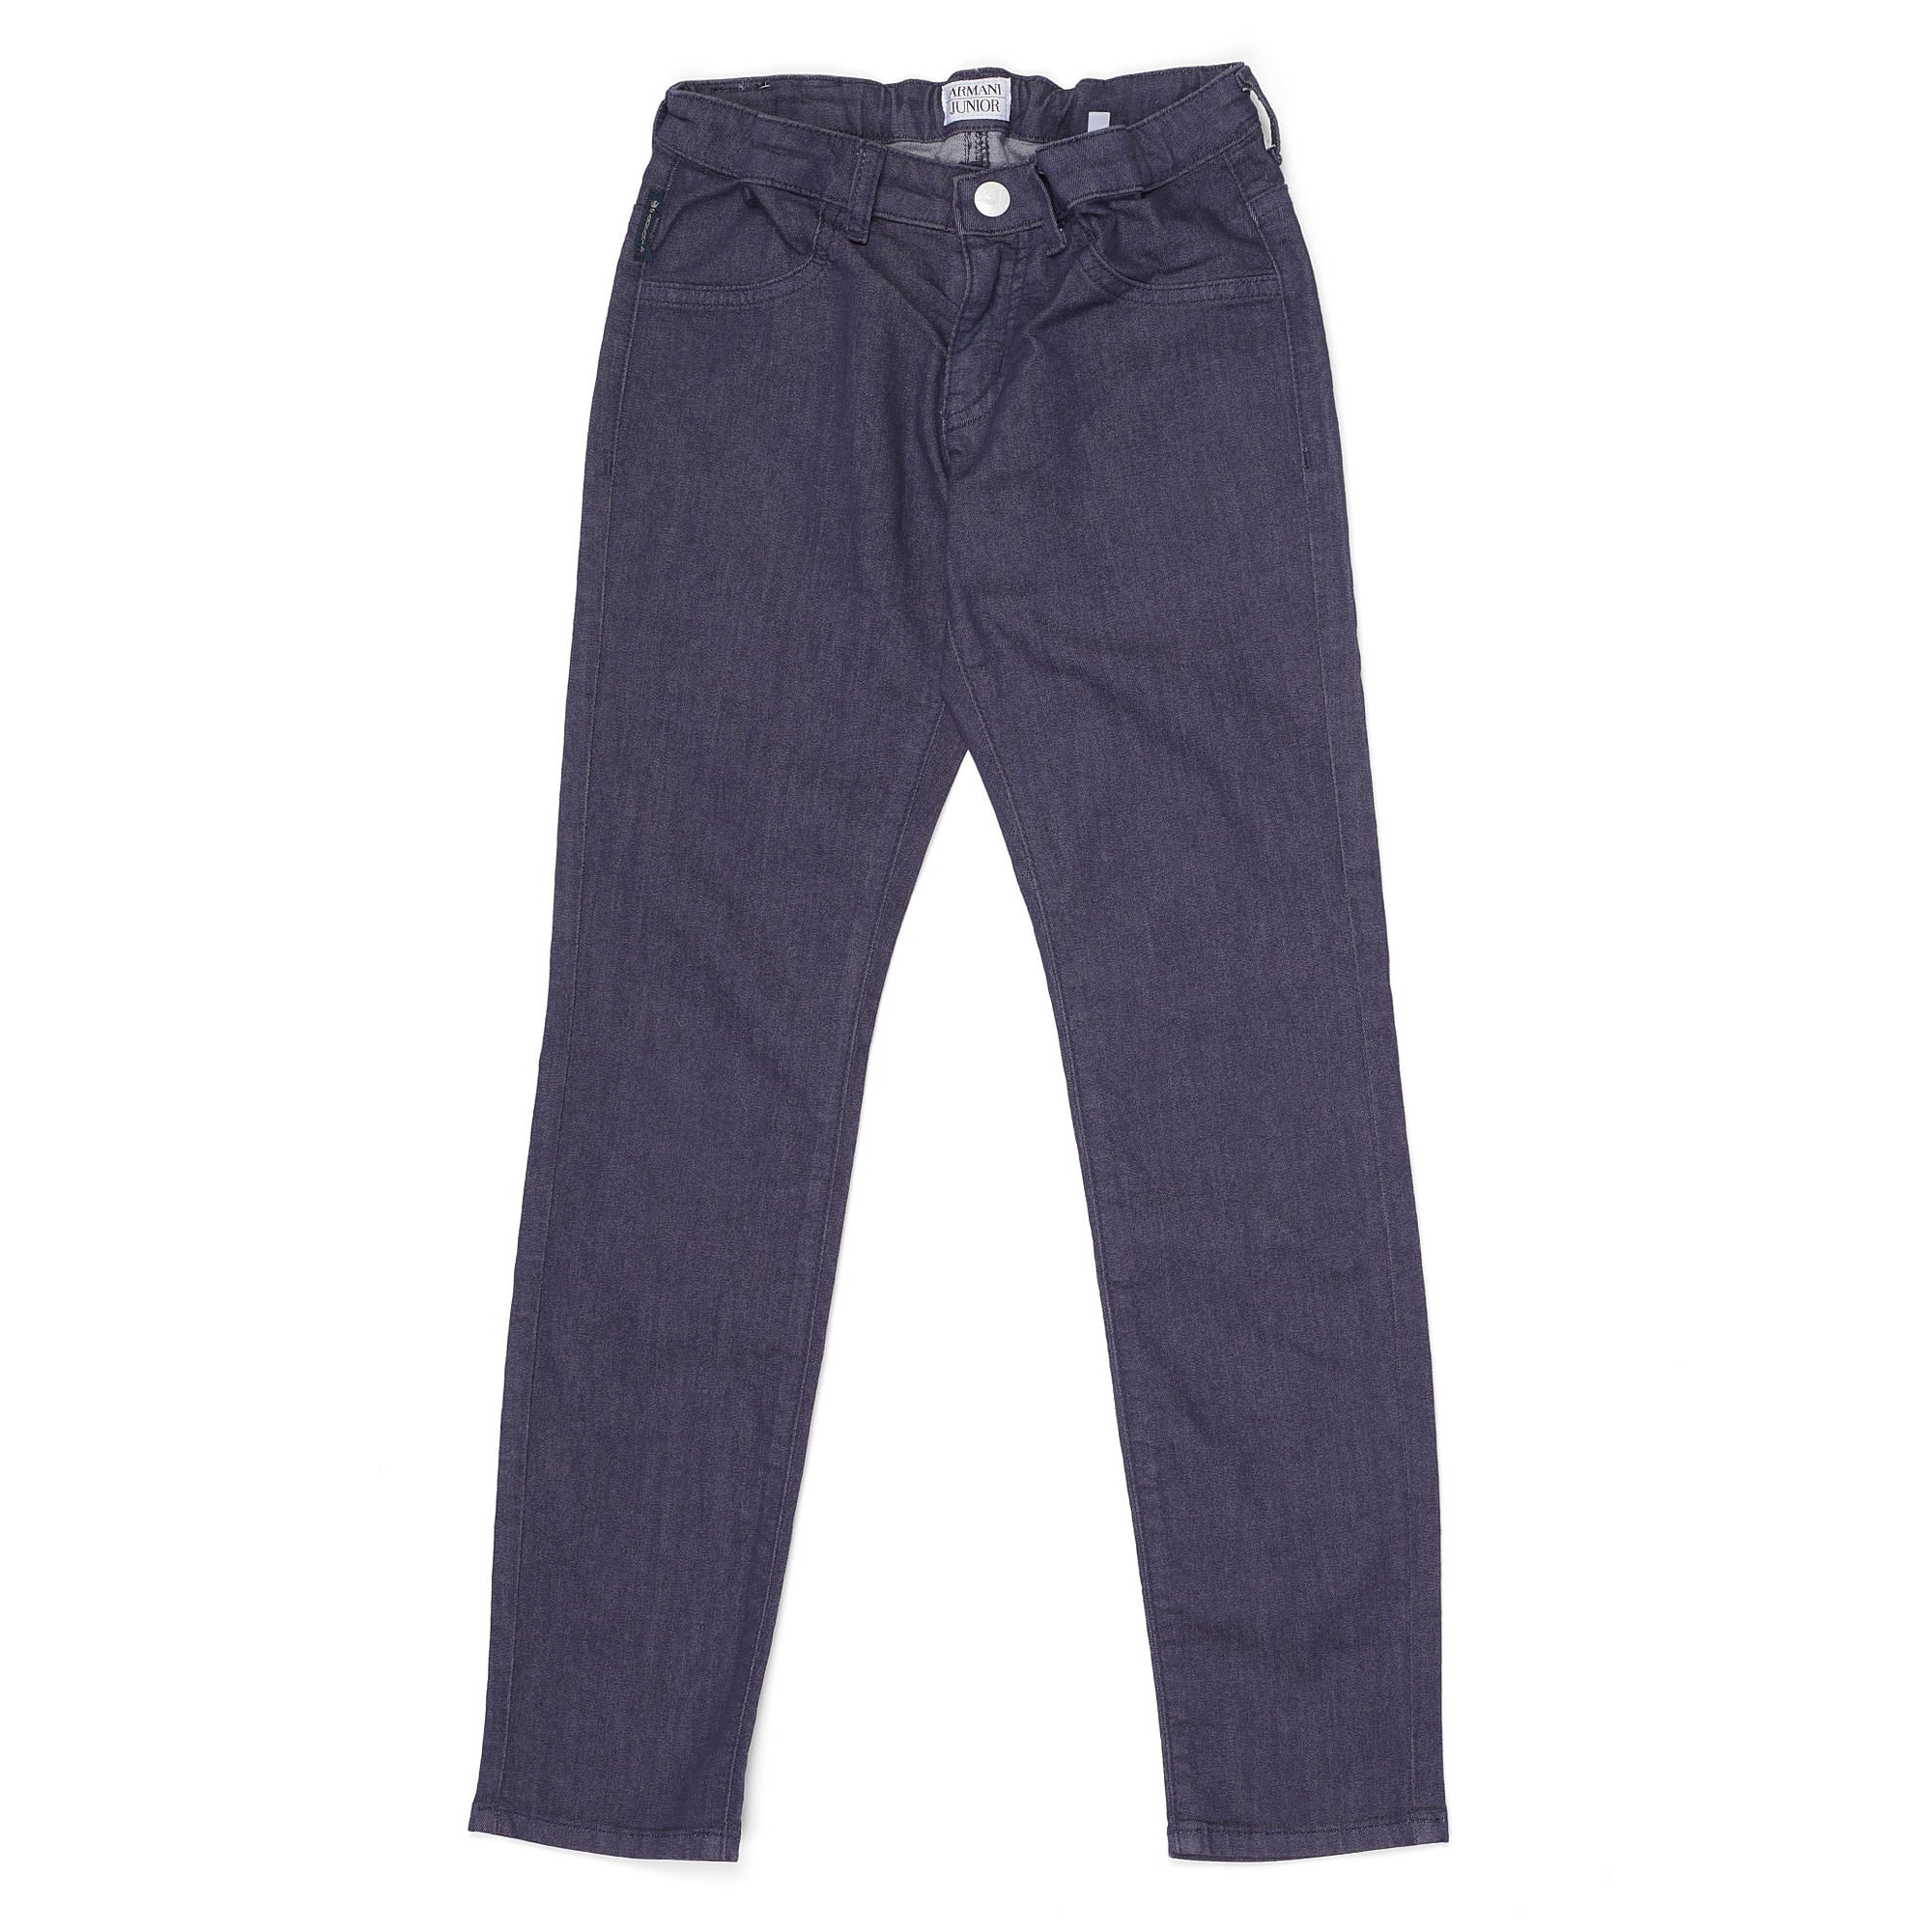 ARMANI JUNIOR Blue Cotton Blend Boys Jeans Pants Size 8A / 130cm